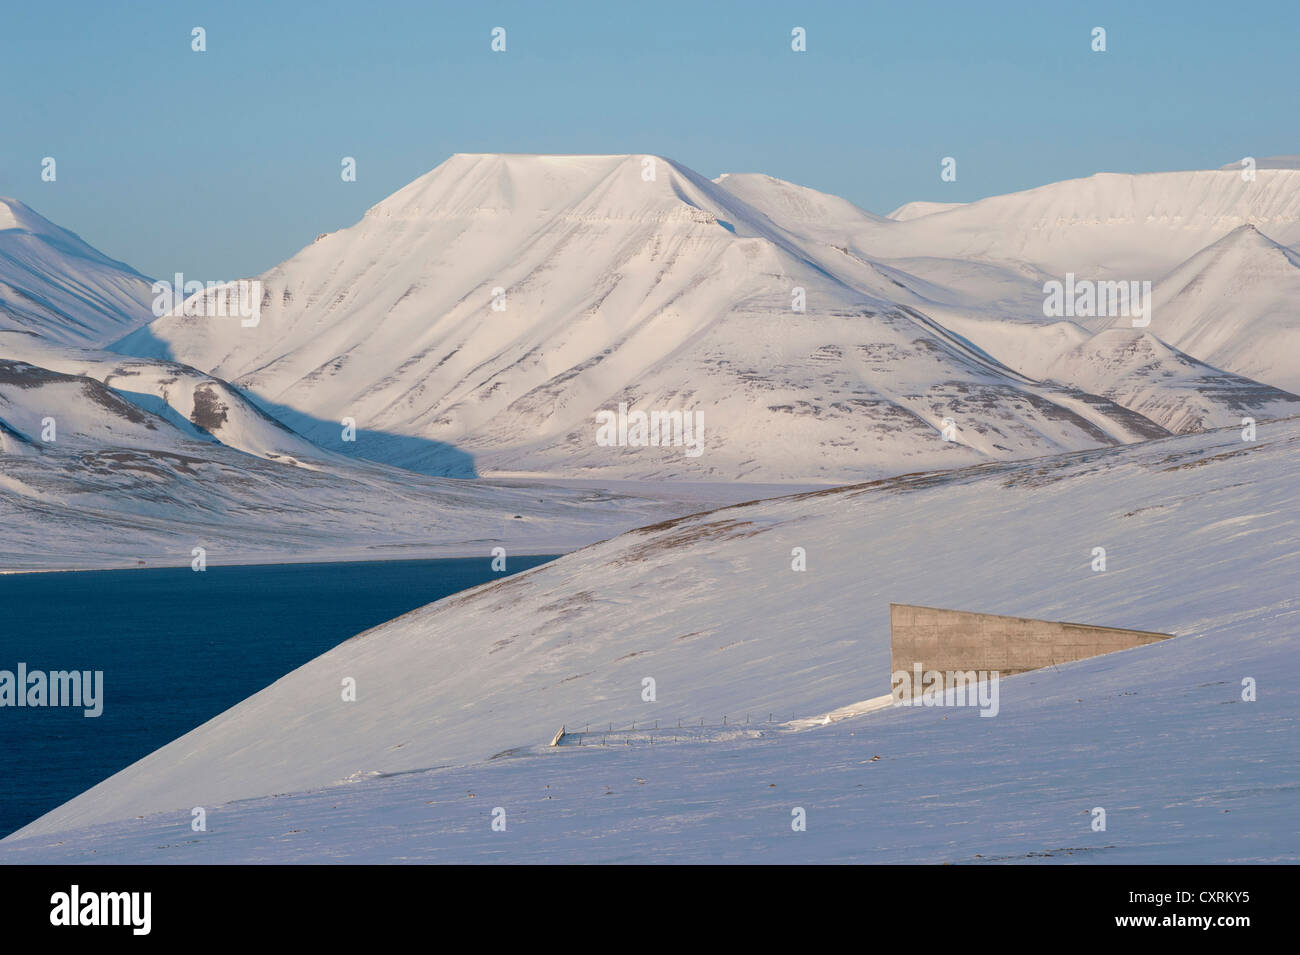 L'entrée de la 'Svalbard Global Seed Vault', Adventfjorden, Advent Bay à l'arrière, Longyearbyen, Spitsbergen, Svalbard, Norvège Banque D'Images